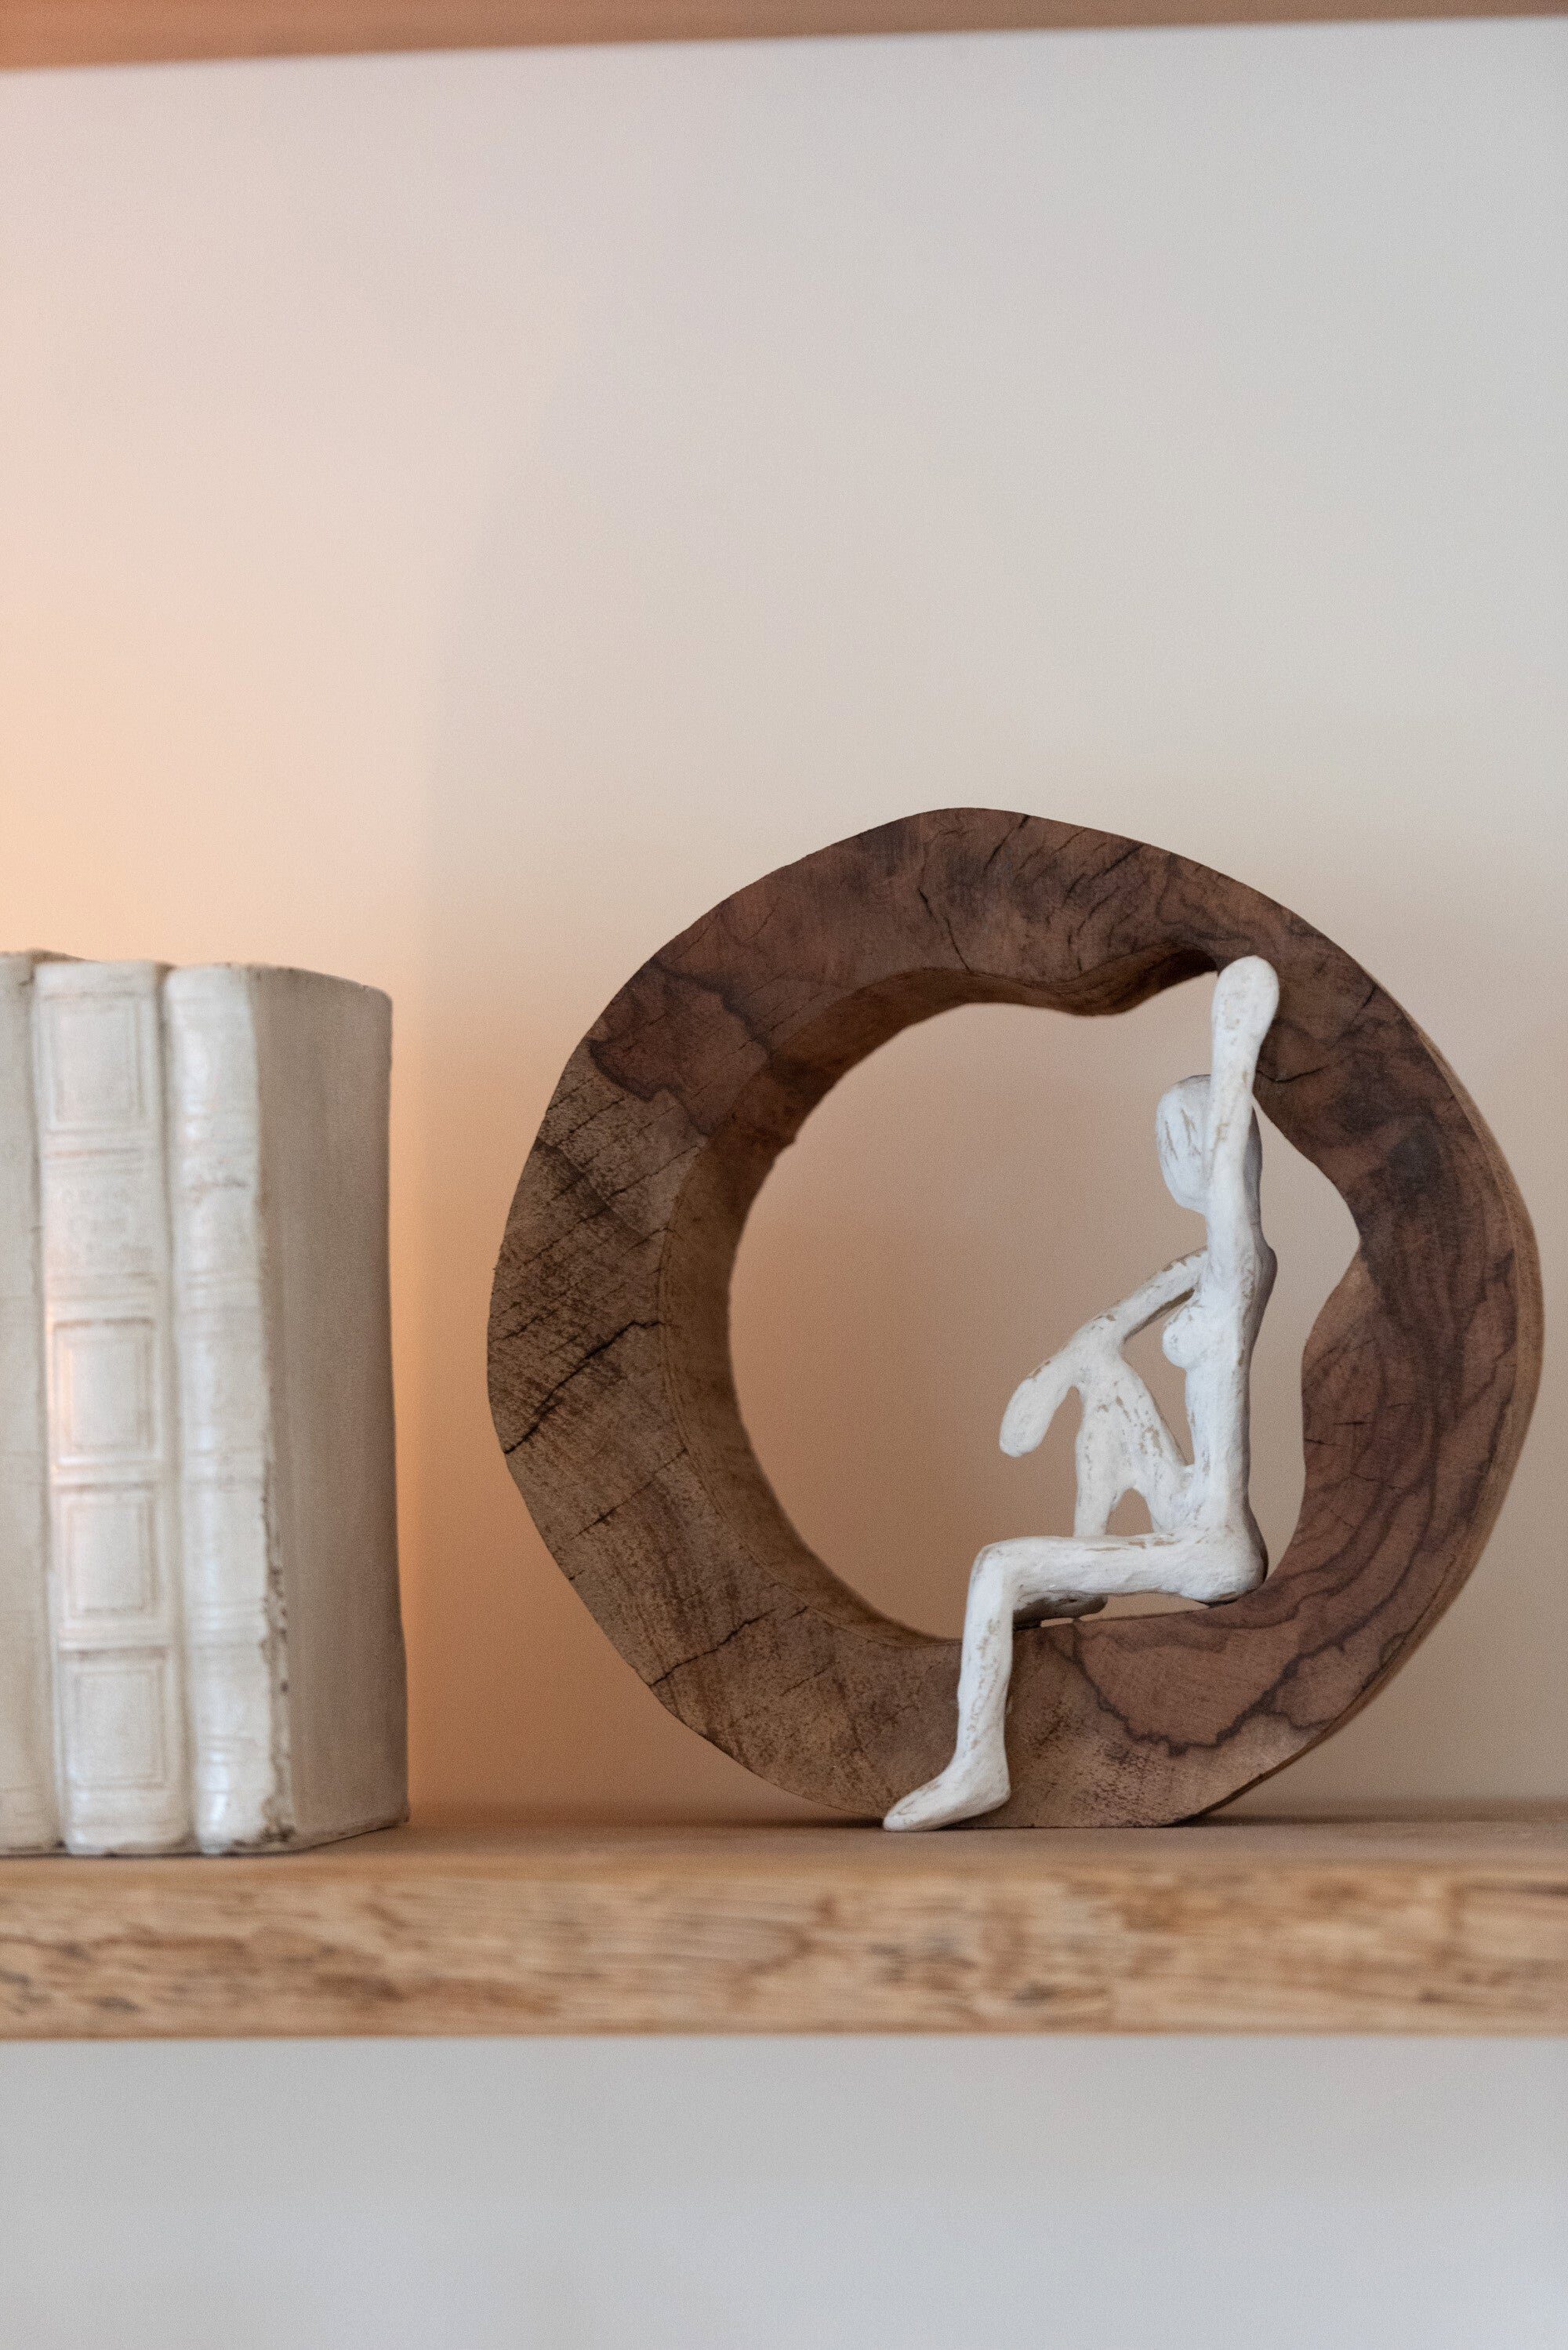 2tlg. Weiß Naturholzskulptur Dekoobjekt Handgefertigte Holz Figur GILDE Naturell Relax